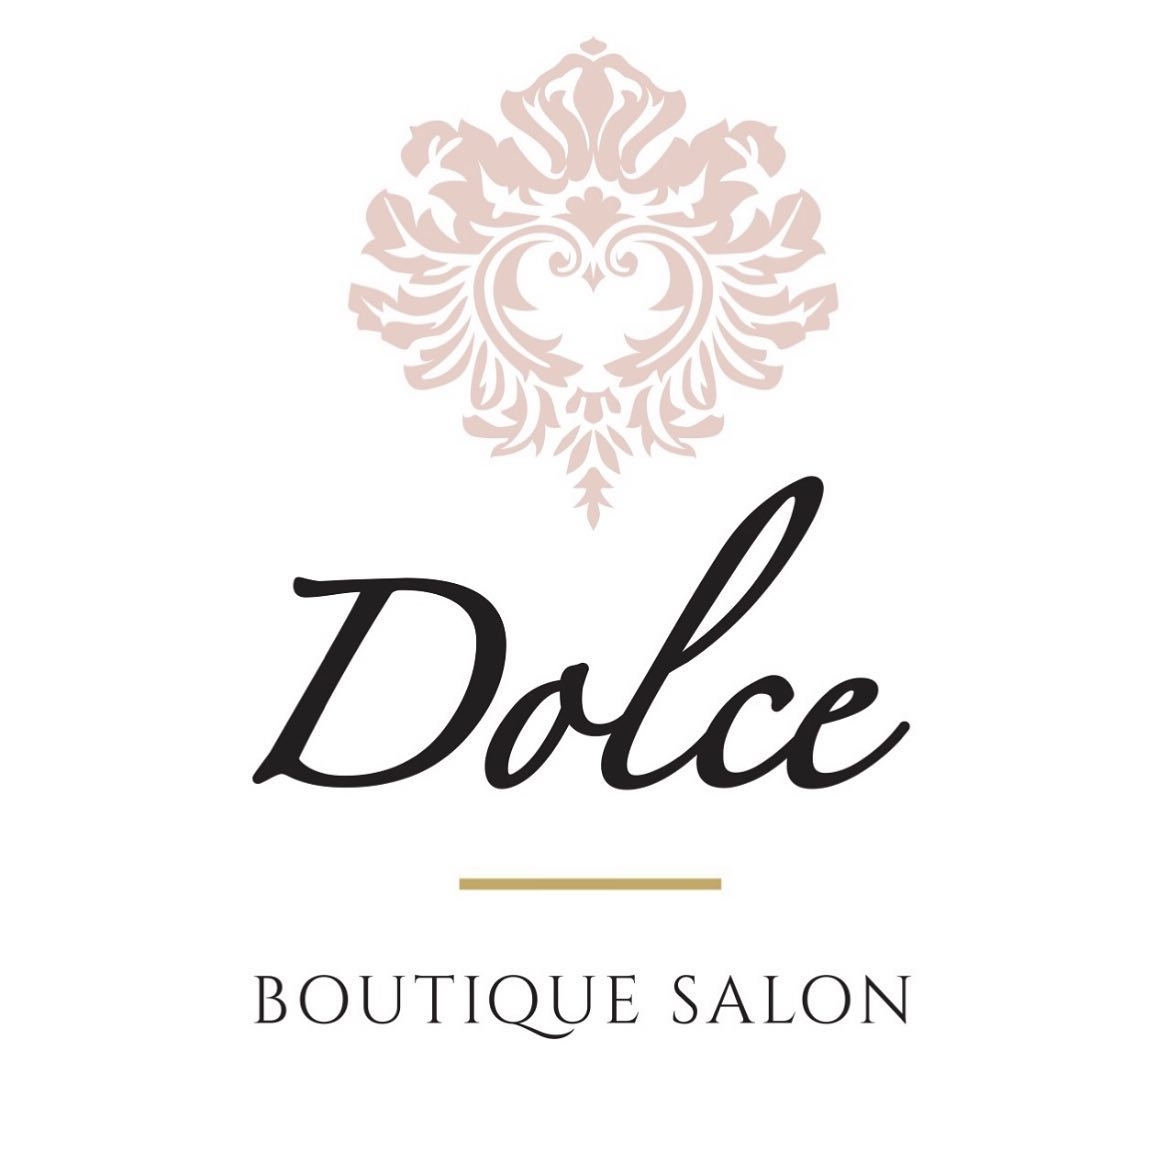 Dolce Salon's logo